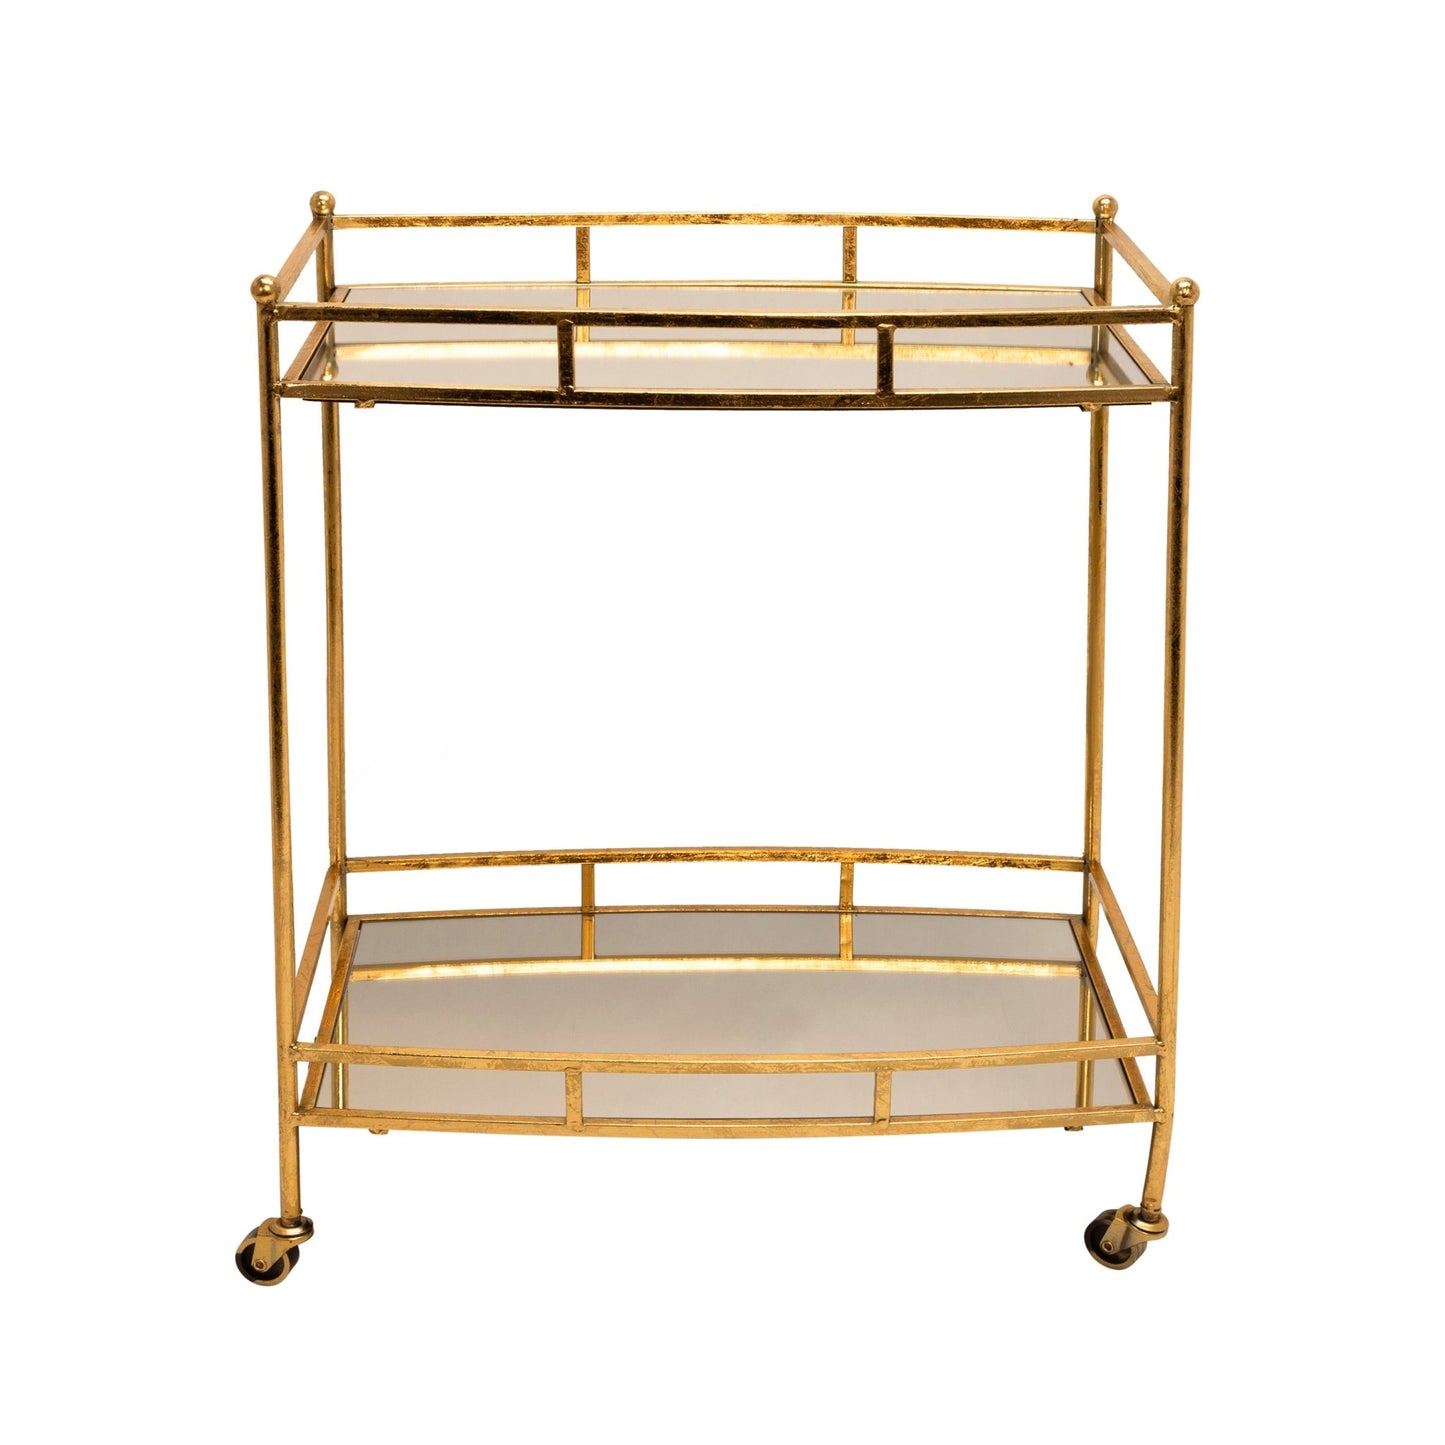 Sabebrook Home Metal 28" 2 Tier Bar Cart, Gold Rectangle - The Bar Design